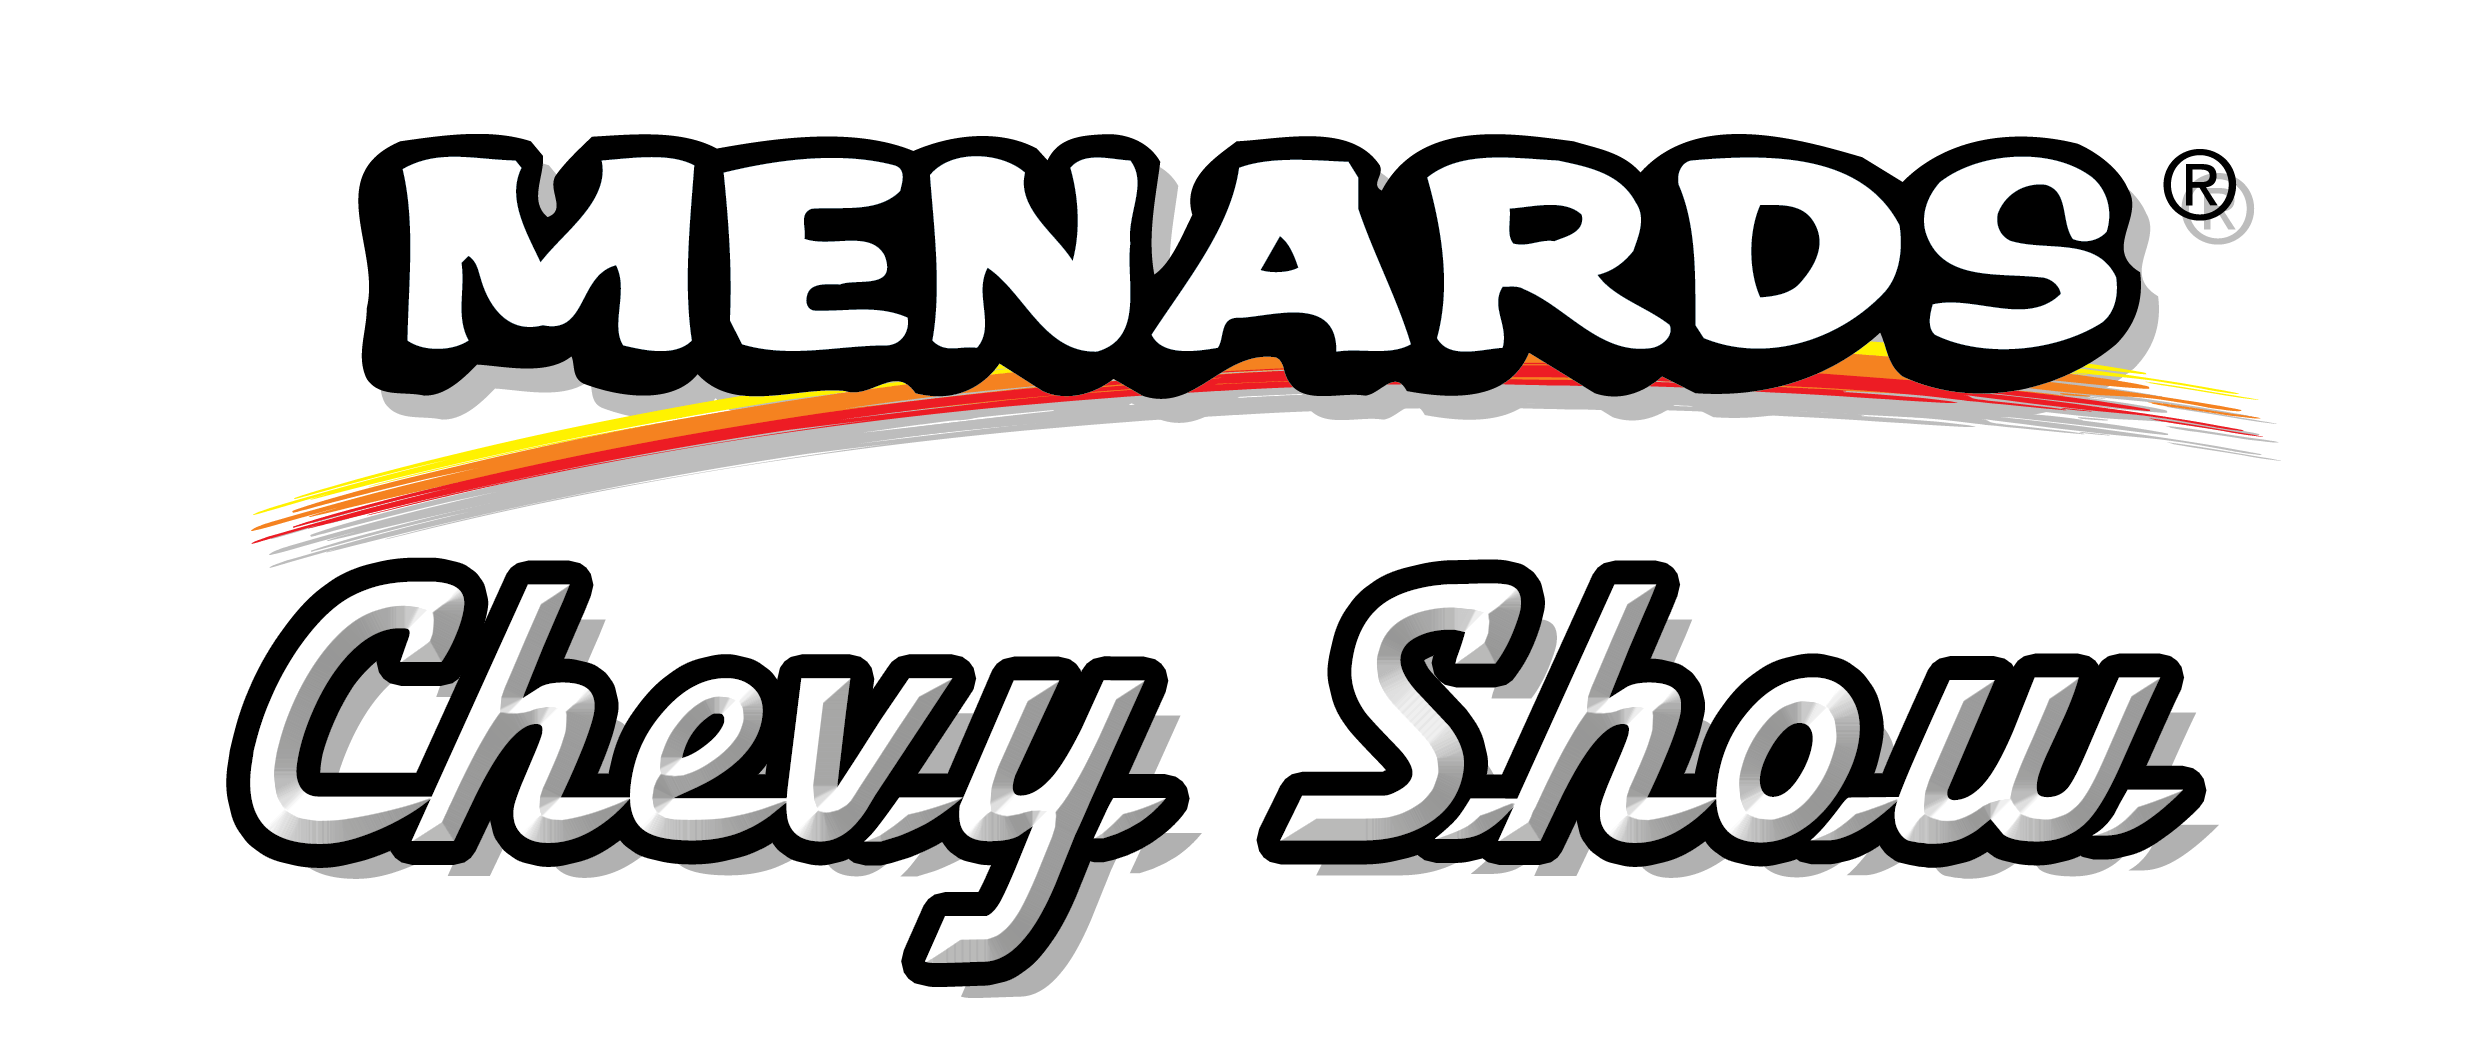 Menards Logo - Menards Chevy Show Presented by Original Parts Group